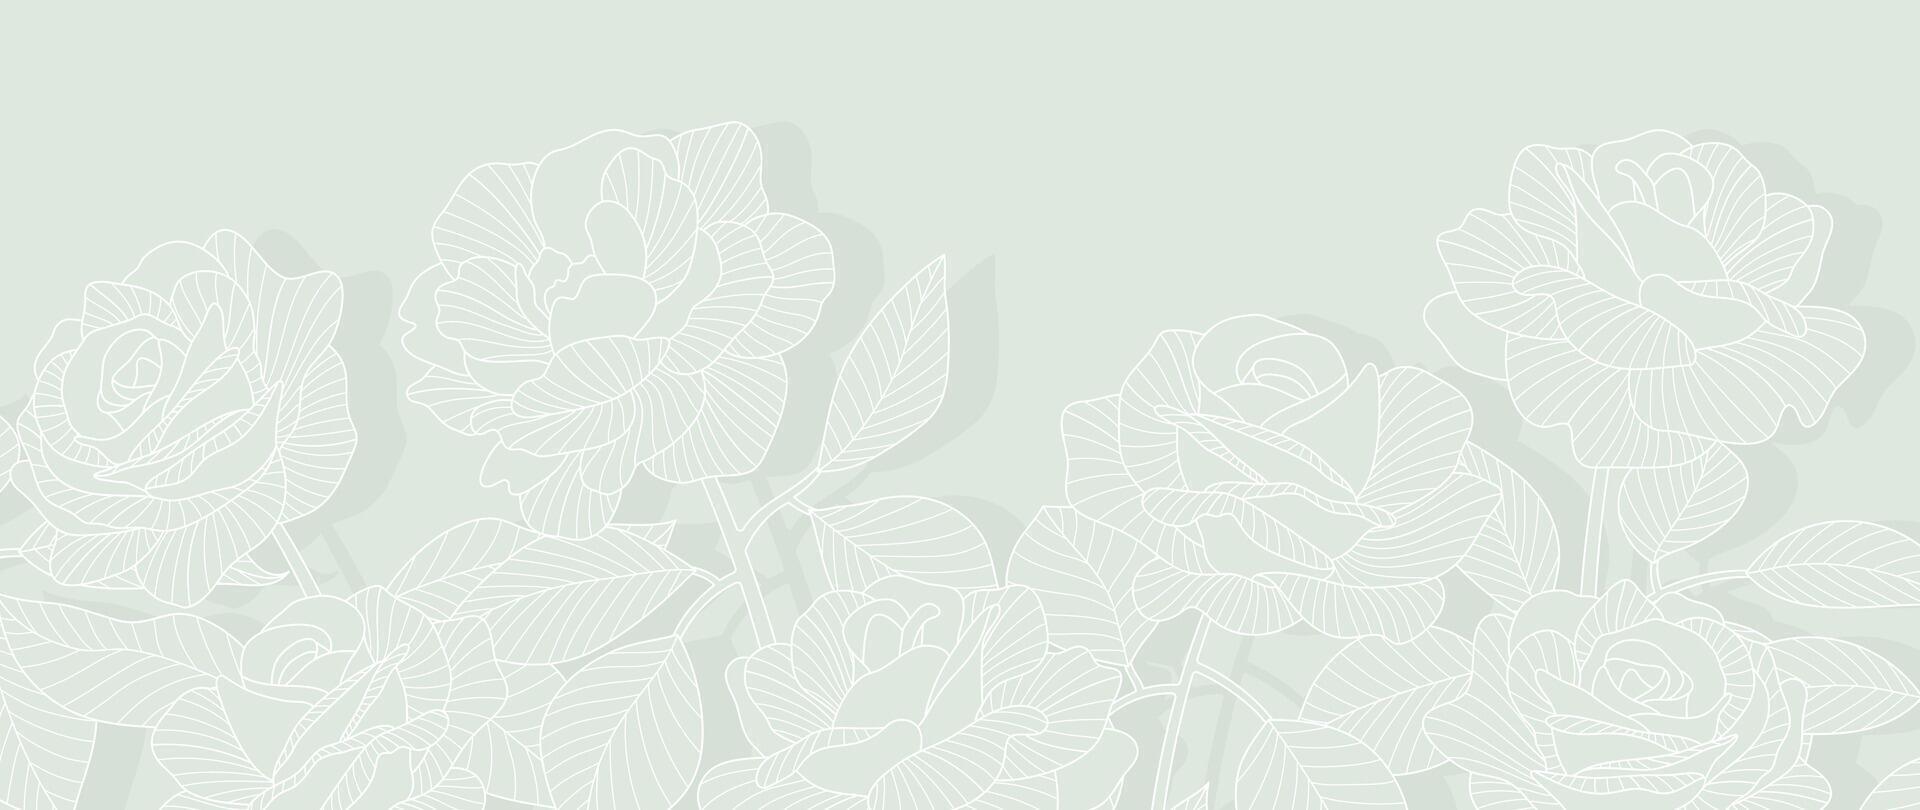 Luxus Rose Blume Linie Kunst Hintergrund Vektor. natürlich botanisch elegant Blume mit Weiß Linie Kunst. Design Illustration zum Dekoration, Mauer Dekor, Hintergrund, Abdeckung, Banner, Poster, Karte. vektor